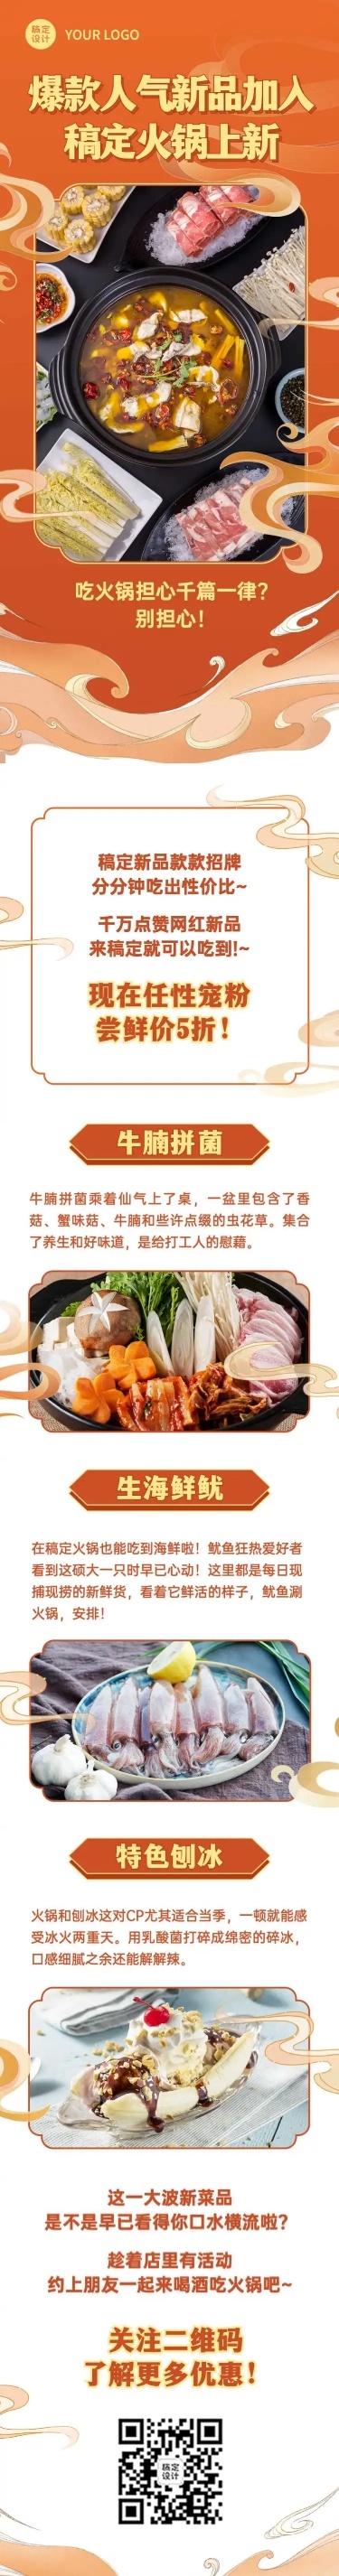 餐饮美食产品营销喜庆文章长图